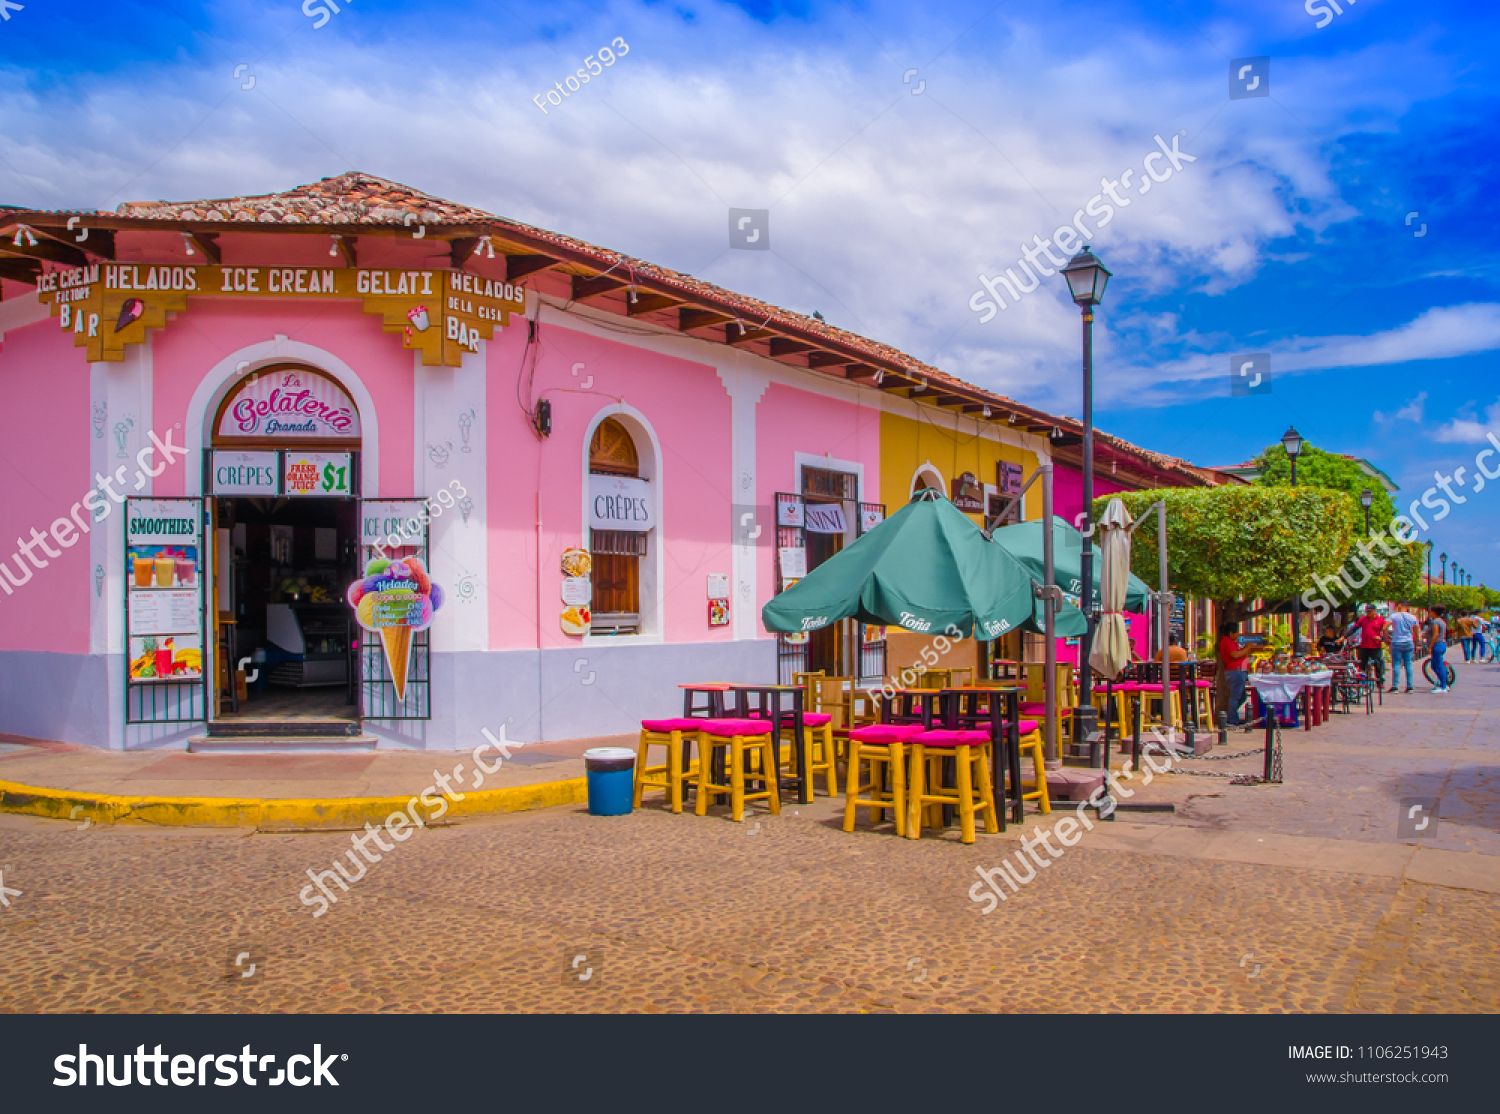 GRANADA, NICARAGUA - APRIL 28, 2016: View of market stalls at a colorful street in Granada, Nicaragua #1106251943